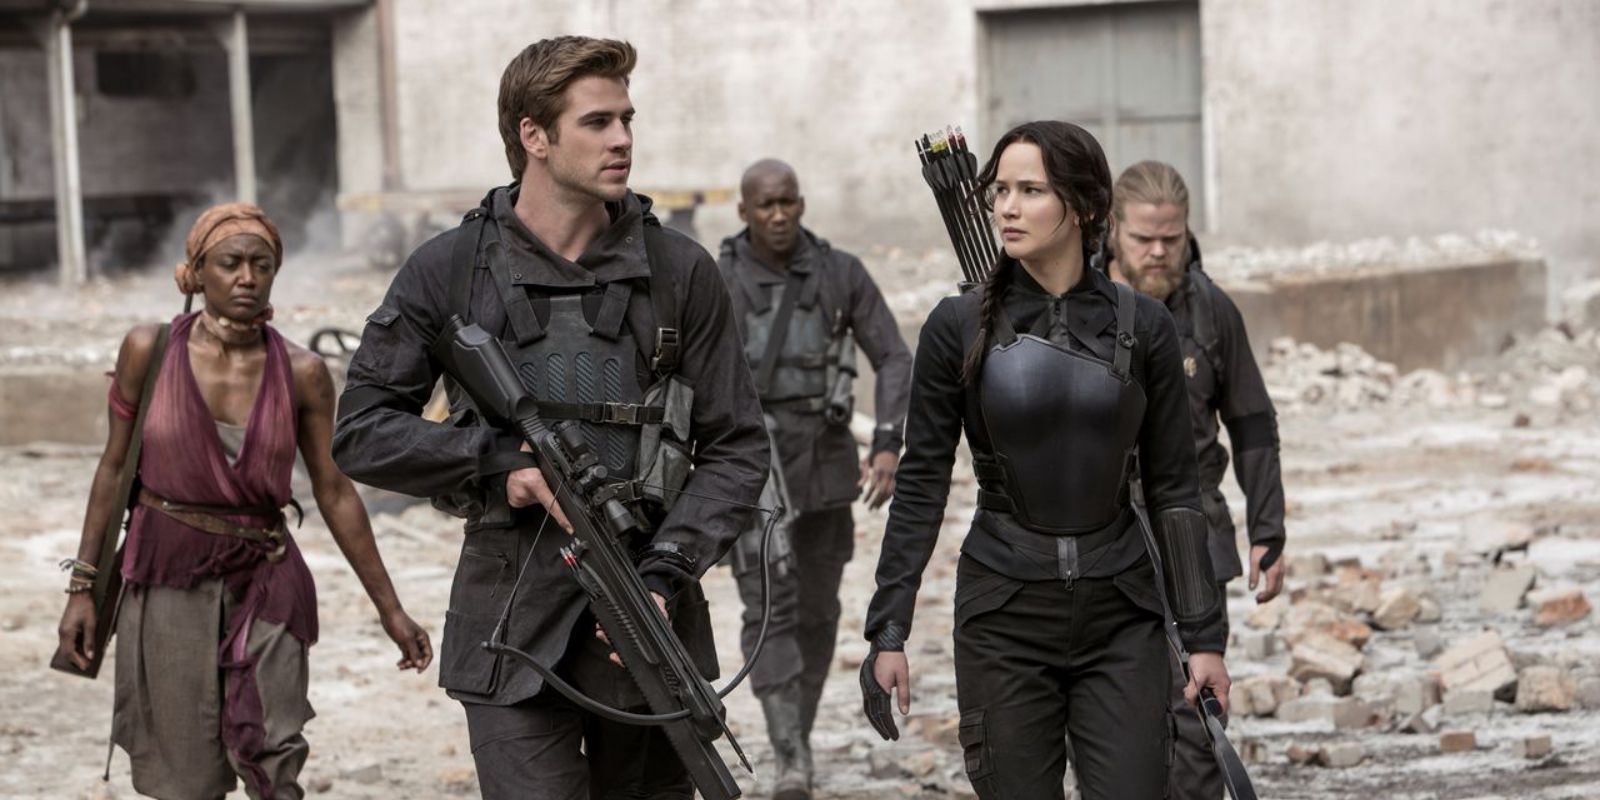 Gale y Katniss caminando con rebeldes en Los juegos del hambre Sinsajo Parte 1.